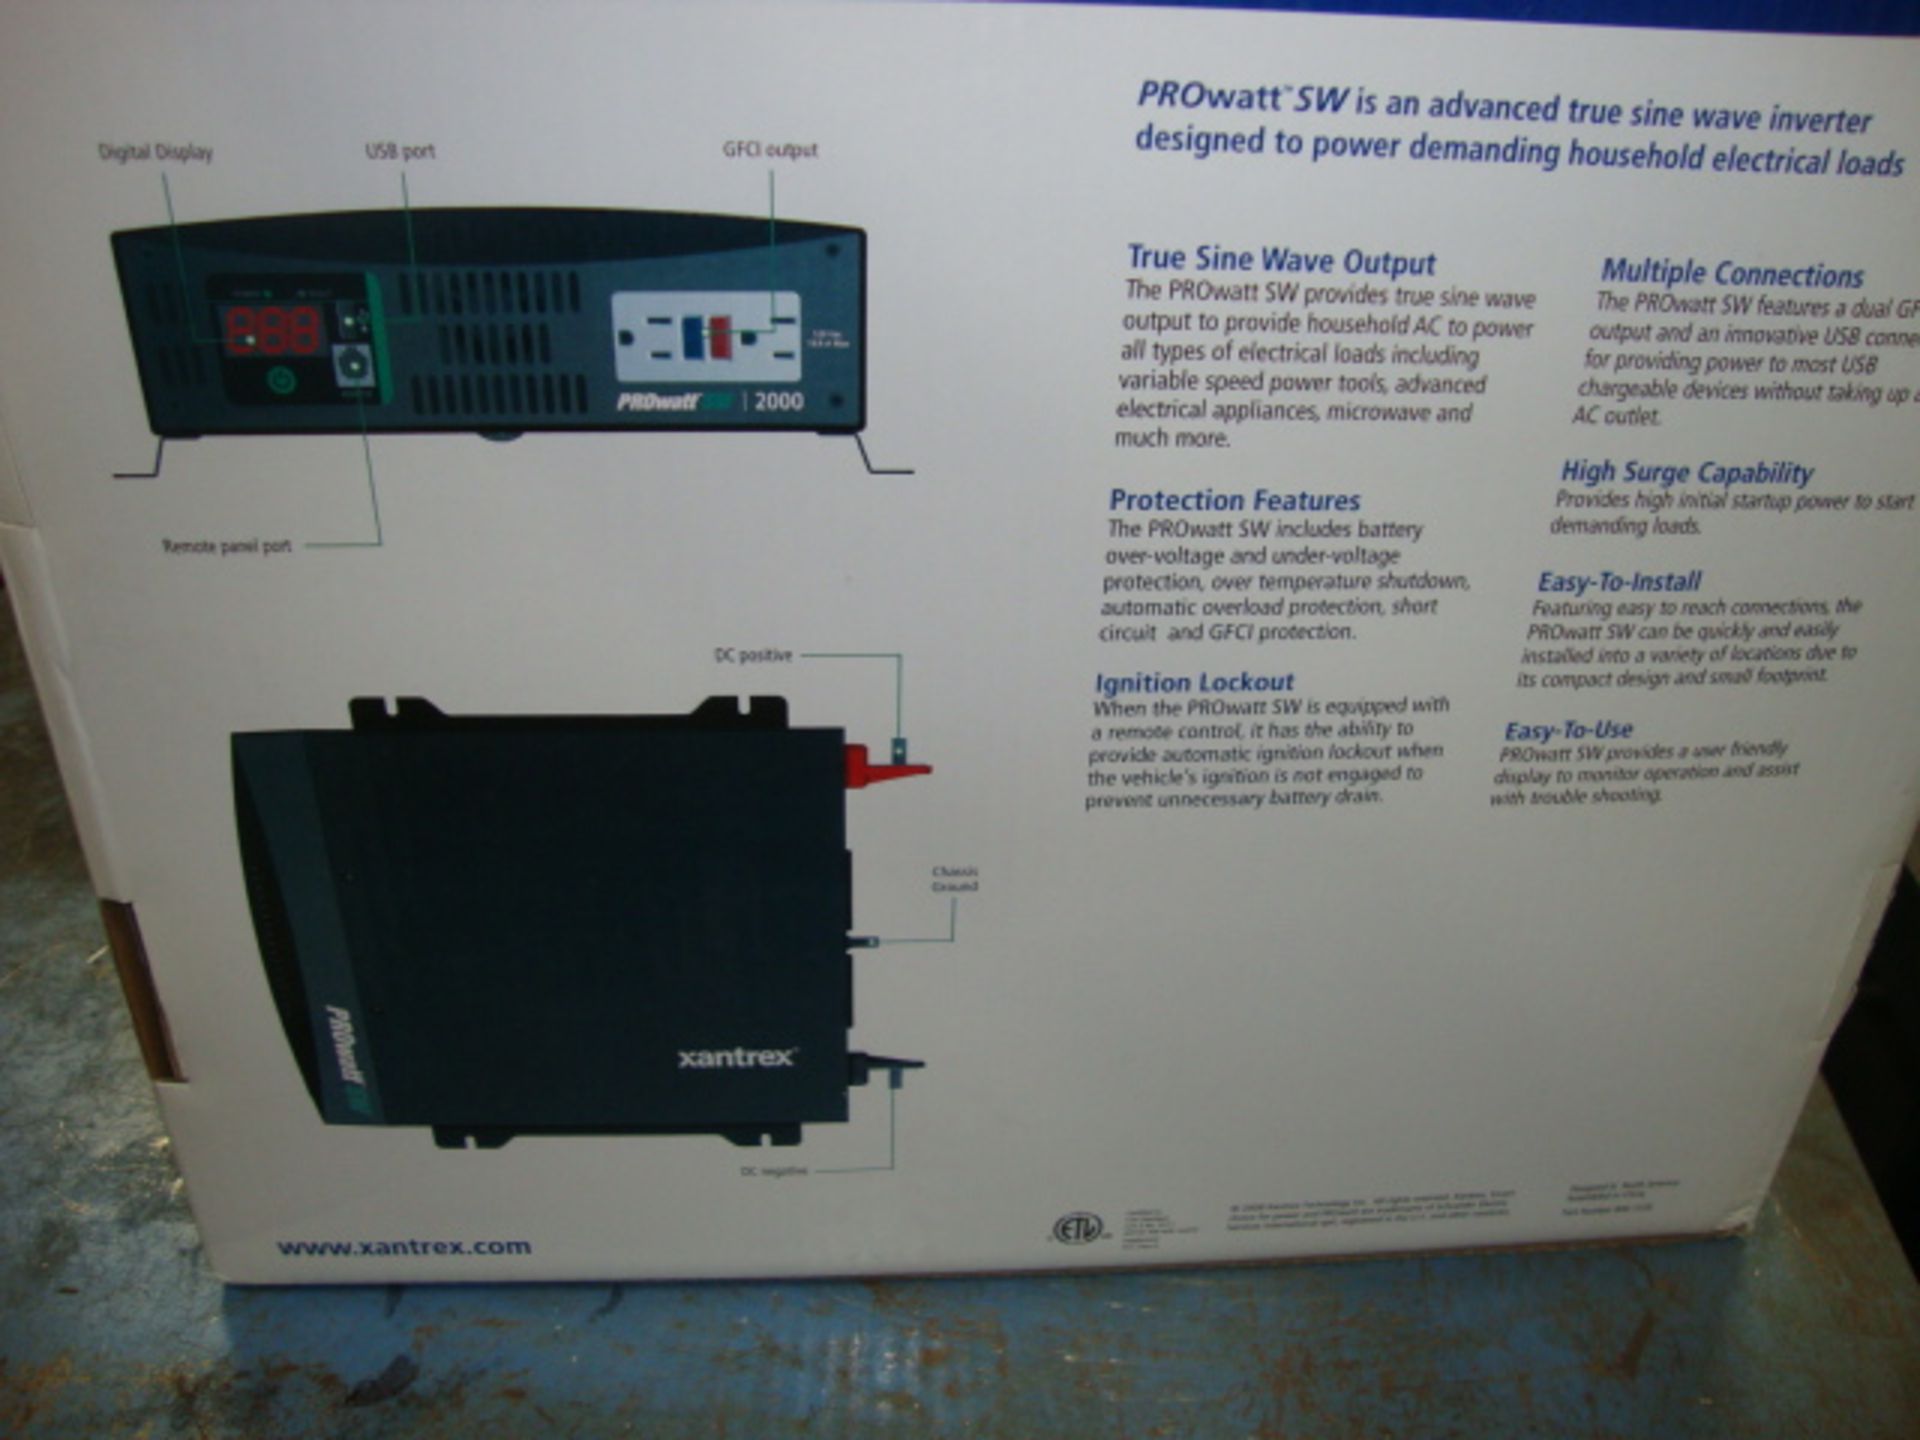 Pr of New Xantrex 2000 Watt Sine Wave Inverter, Model Prowatt SW 2000 - Image 5 of 7